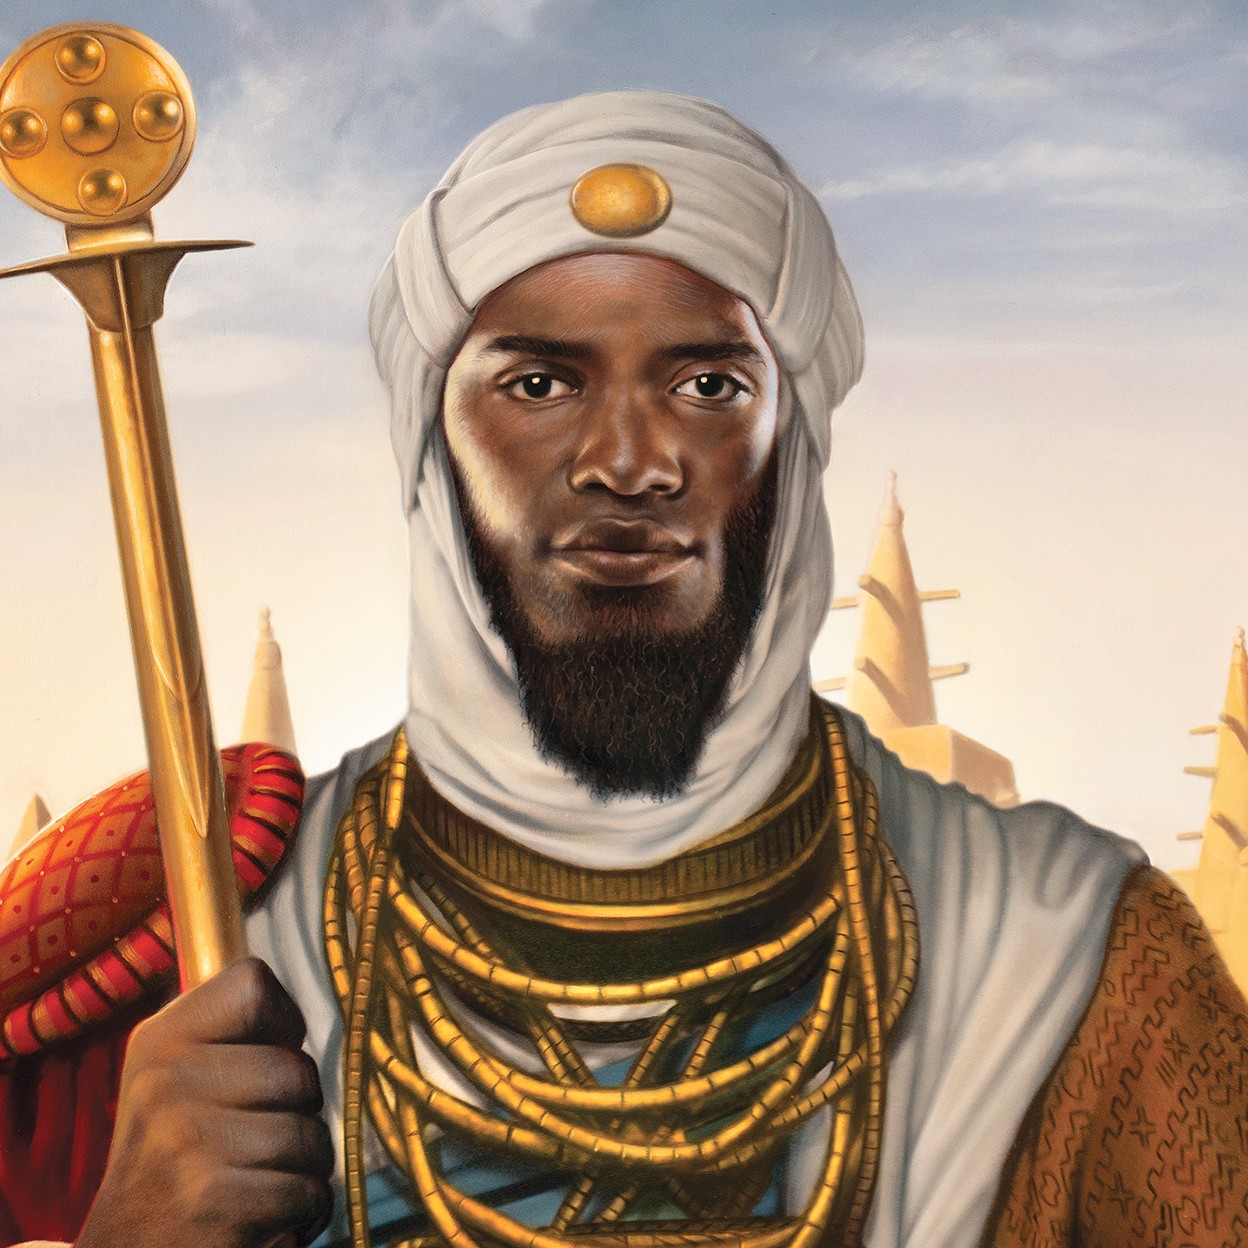 Northwestern Magazine: A Golden Age: King Mansa Musa's Reign